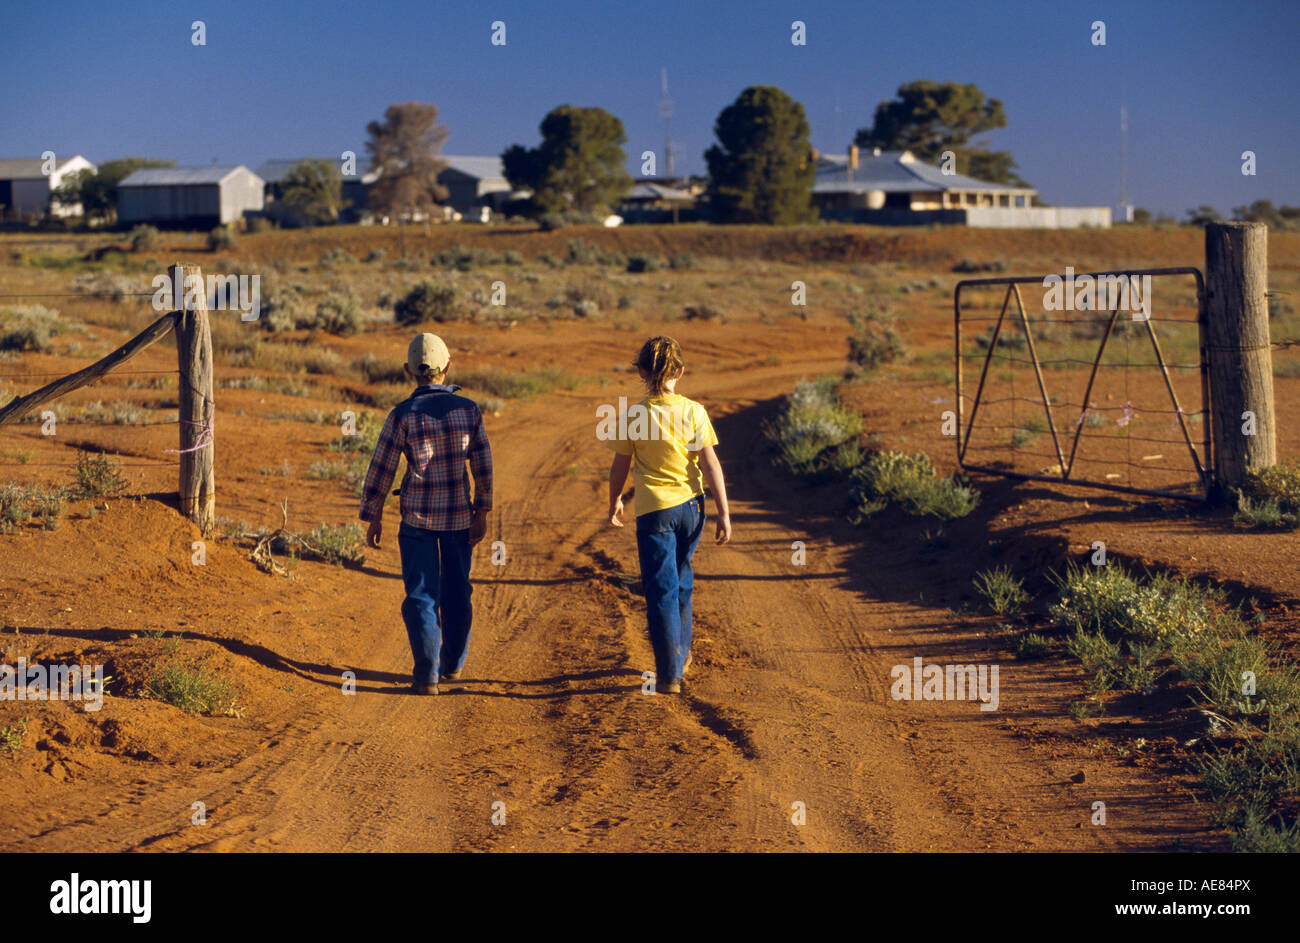 La vie à la ferme de l'Outback, l'Australie Banque D'Images